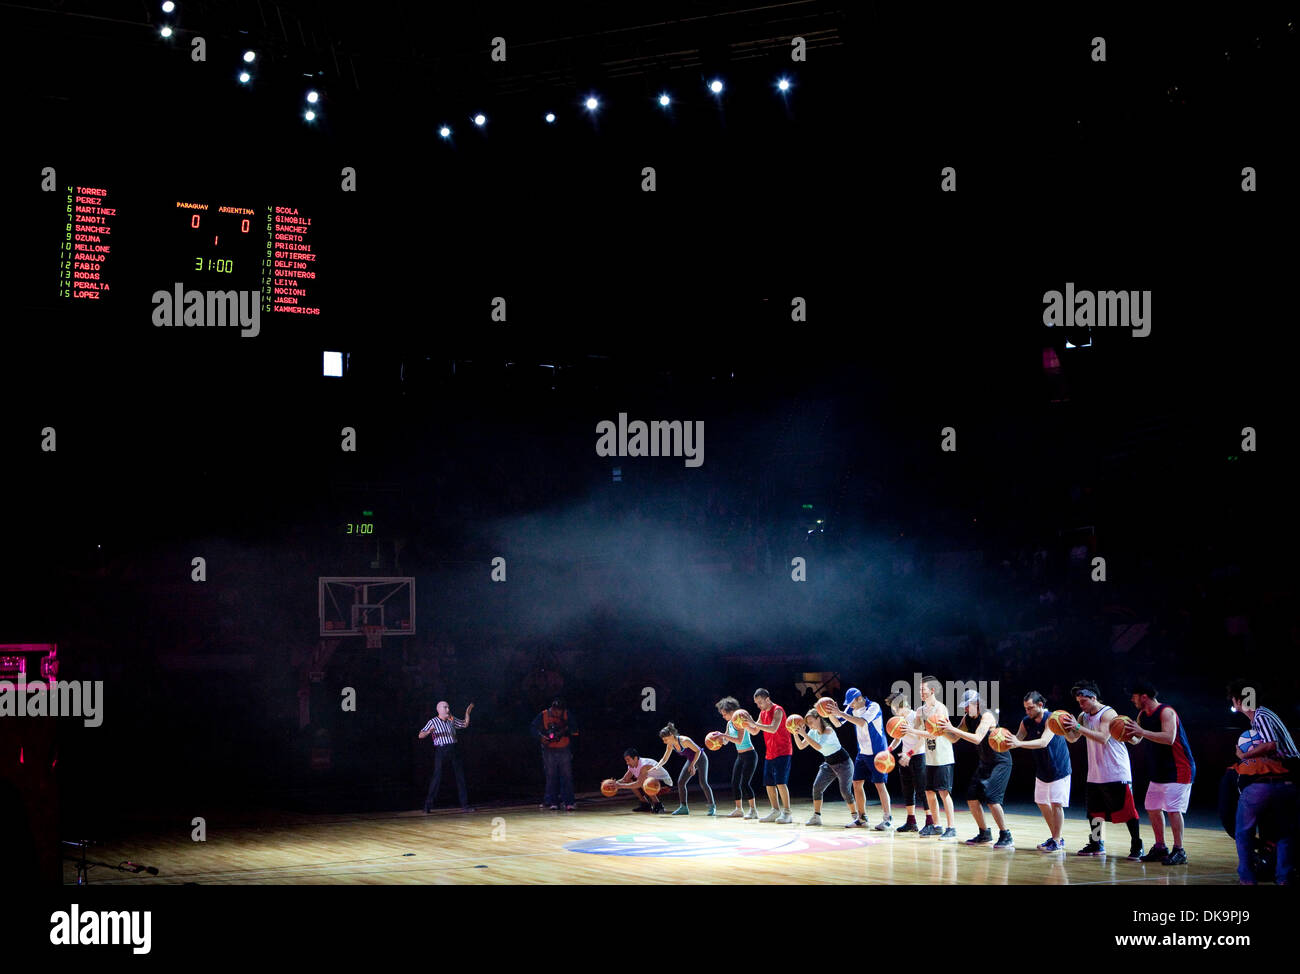 Aug 30, 2011 - Mar del Plata, Buenos Aires, Argentine - Interprètes lors de la cérémonie d'ouverture du championnat de basket-ball FIBA Amériques. (Crédit Image : © Ryan Noble/ZUMApress.com) Banque D'Images